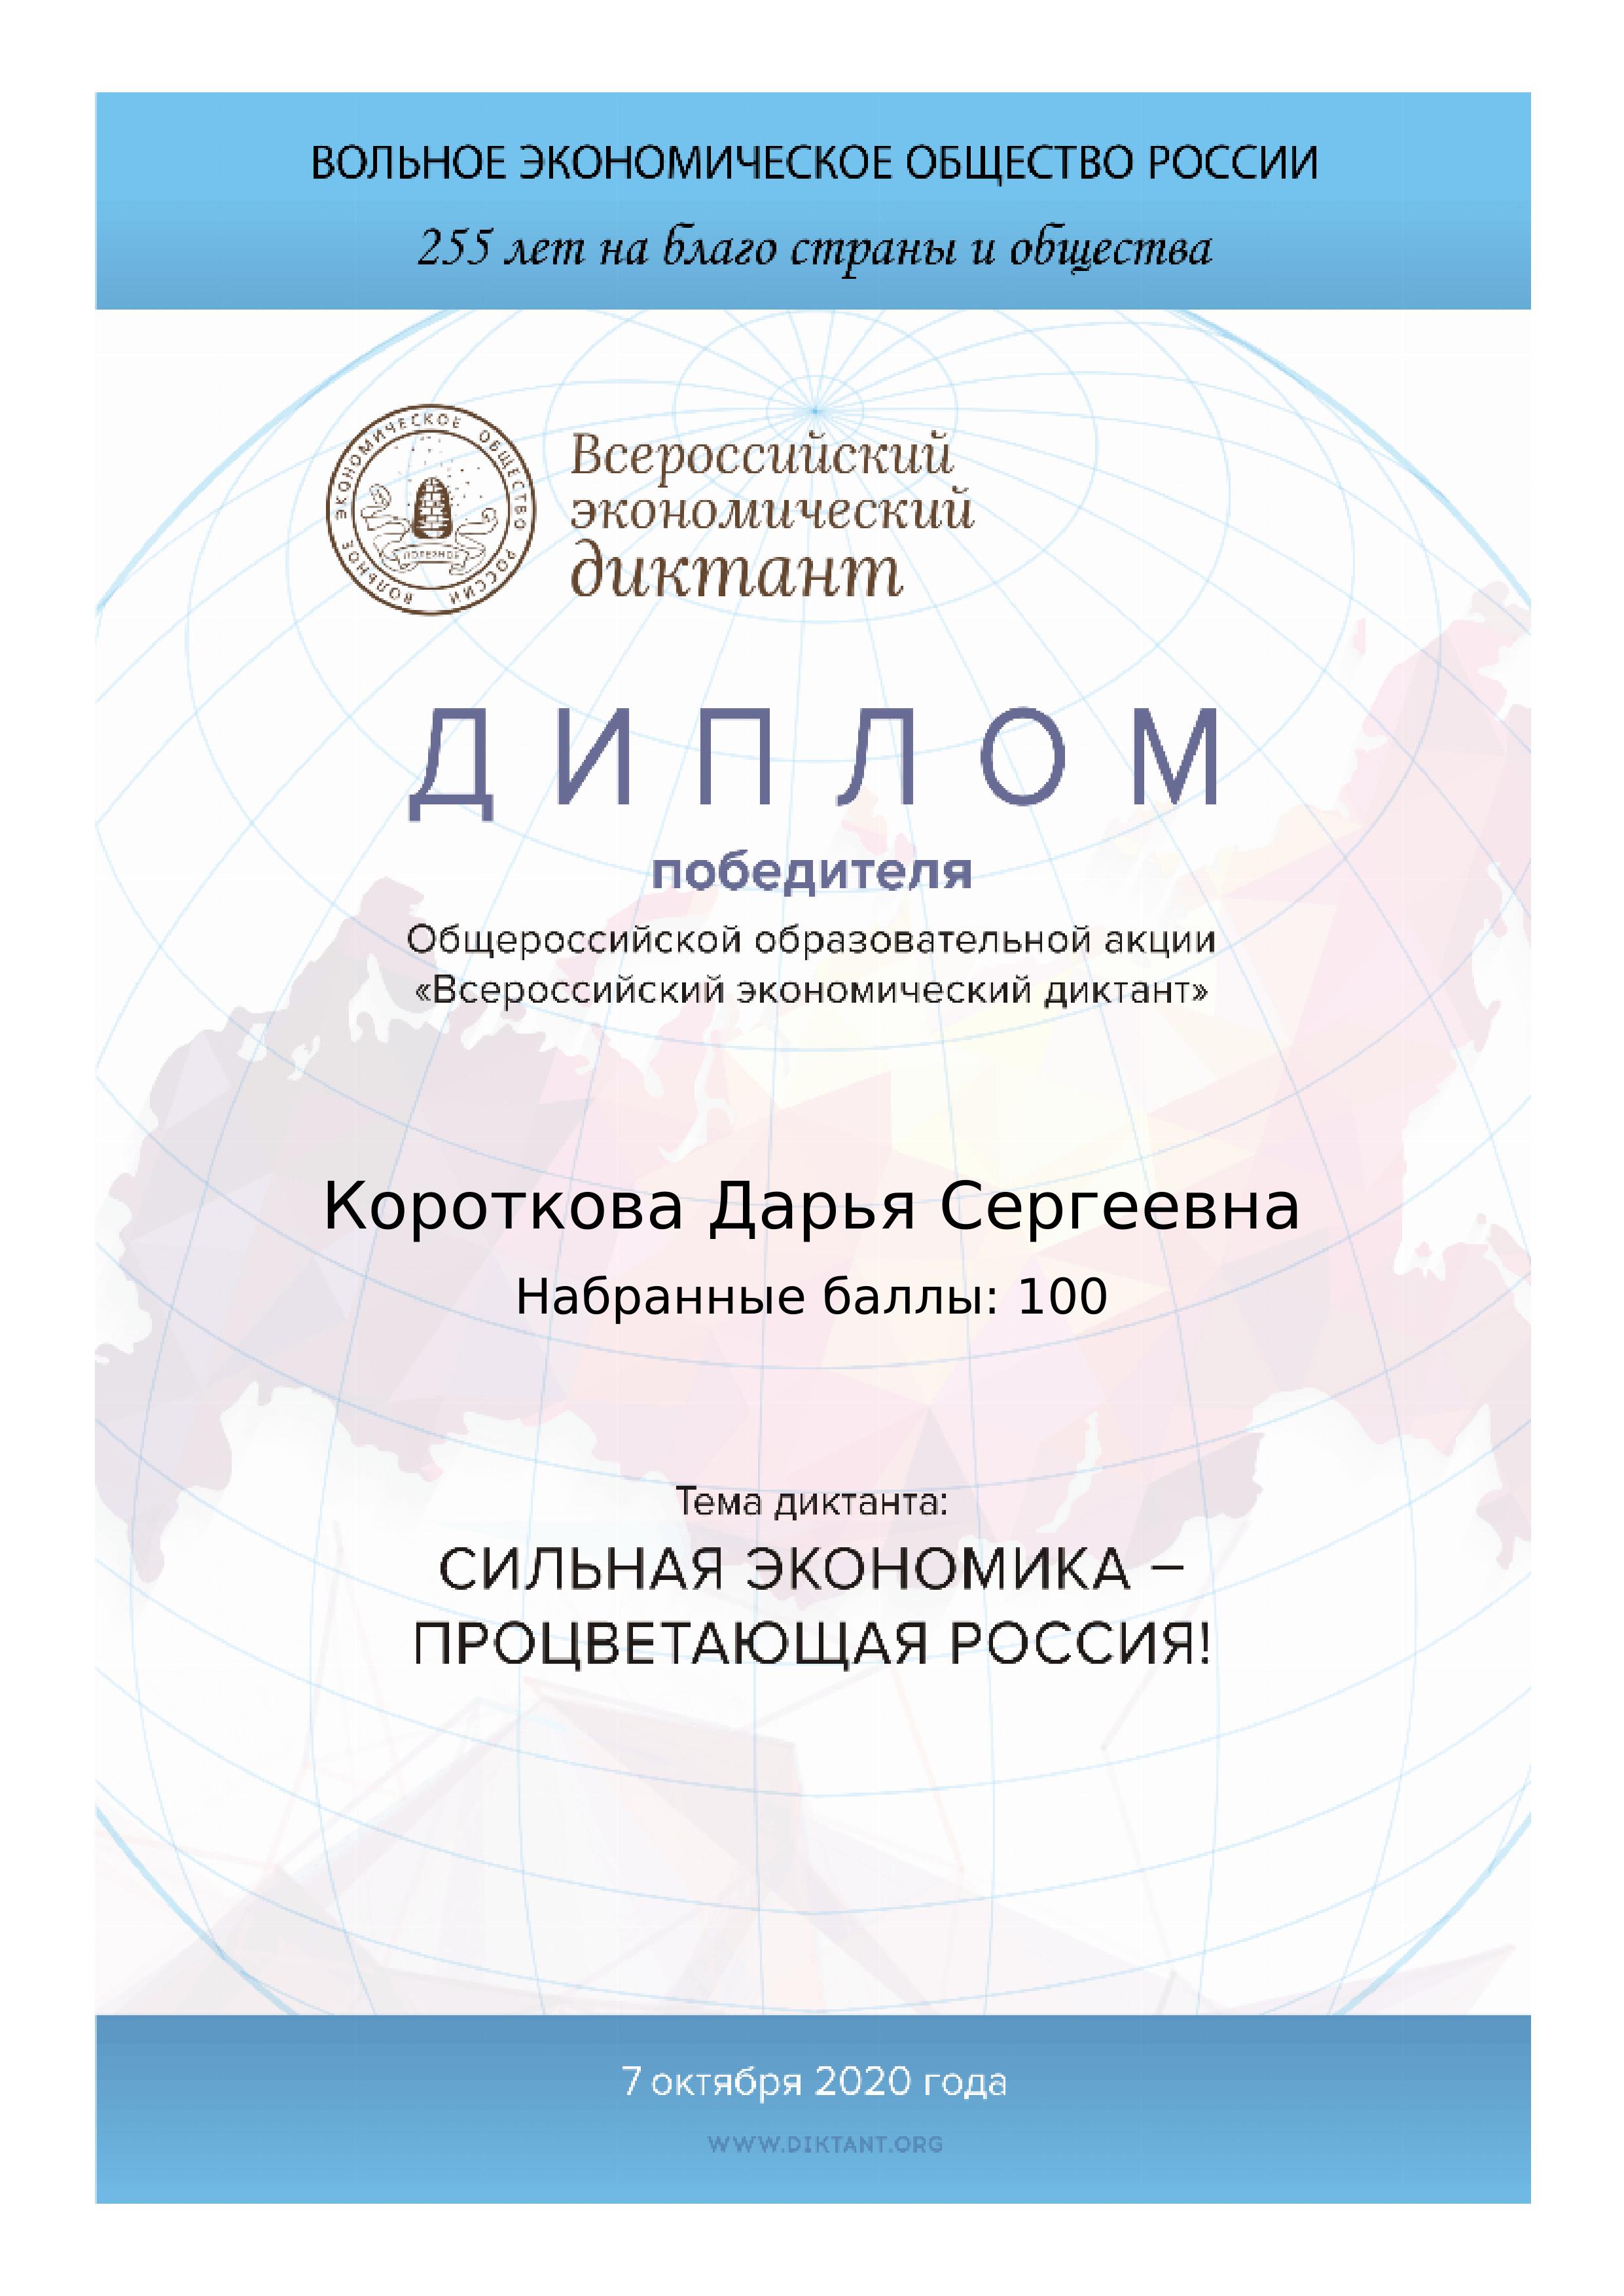 Студент ИЭП Короткова Дарья стала победителем Всероссийского экономического диктанта